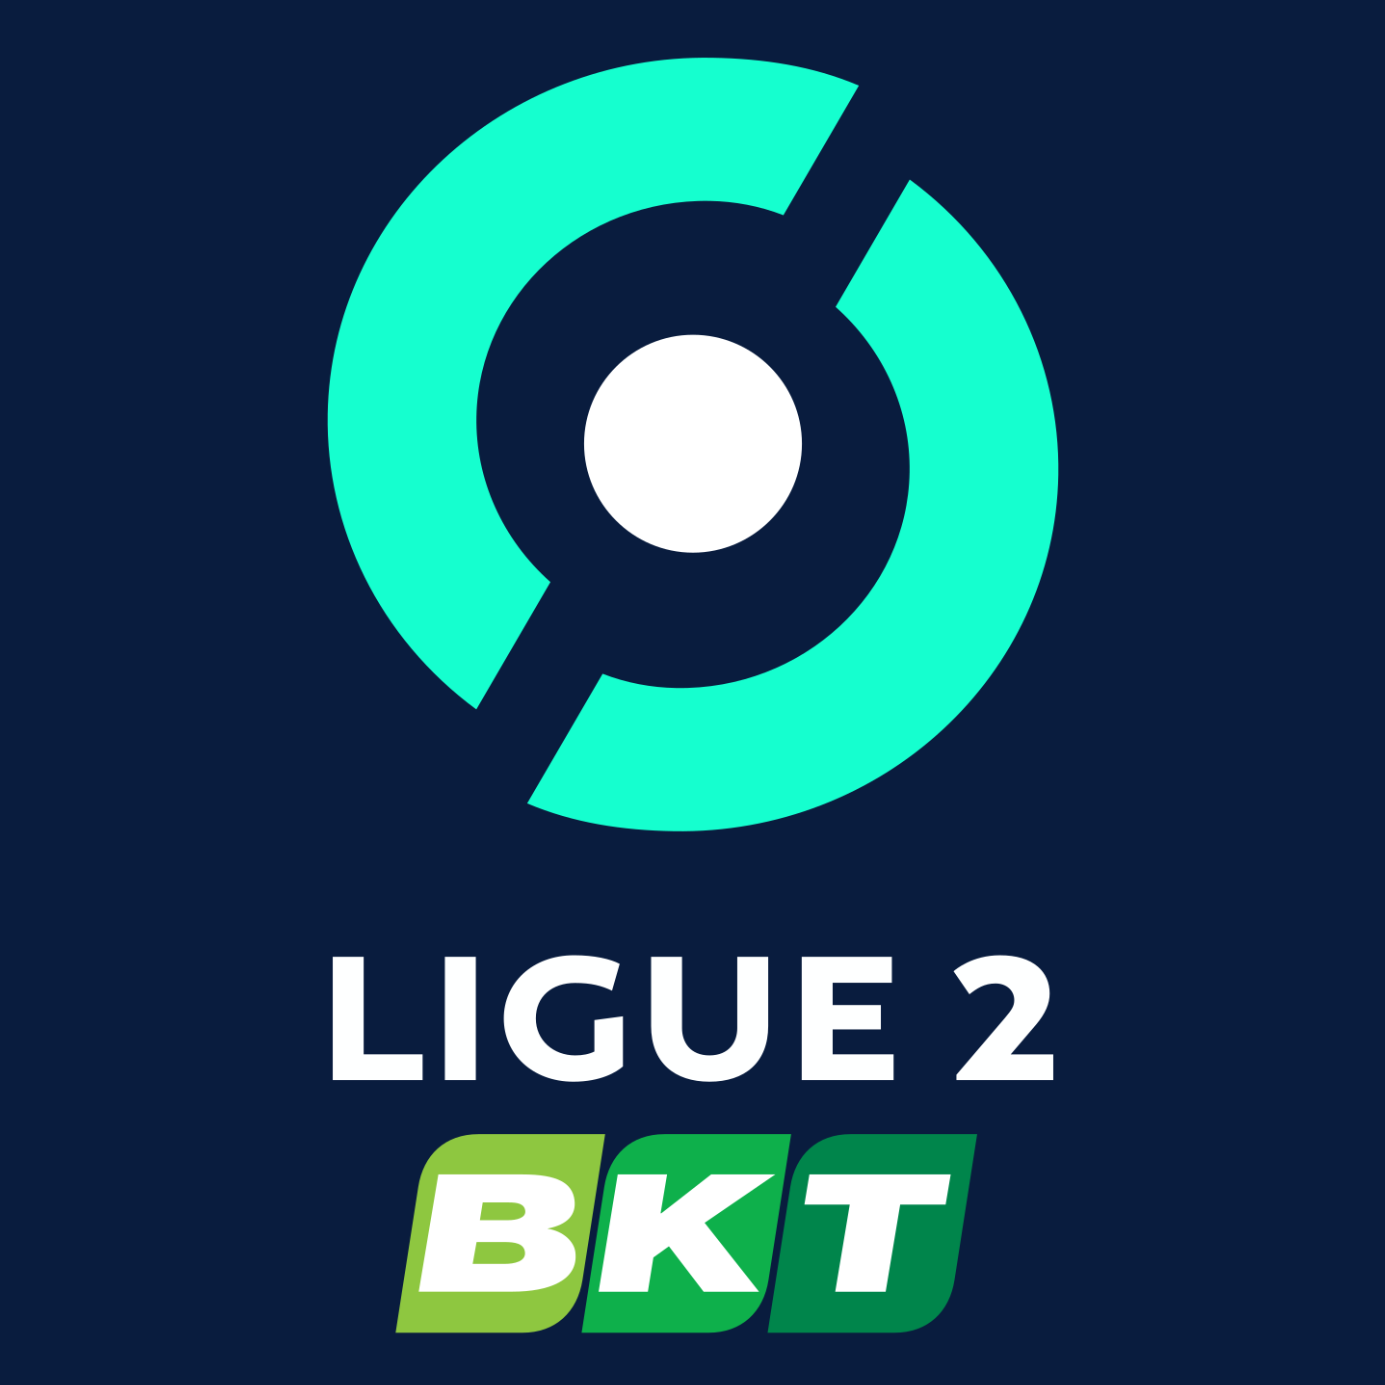 Places Ligue 2